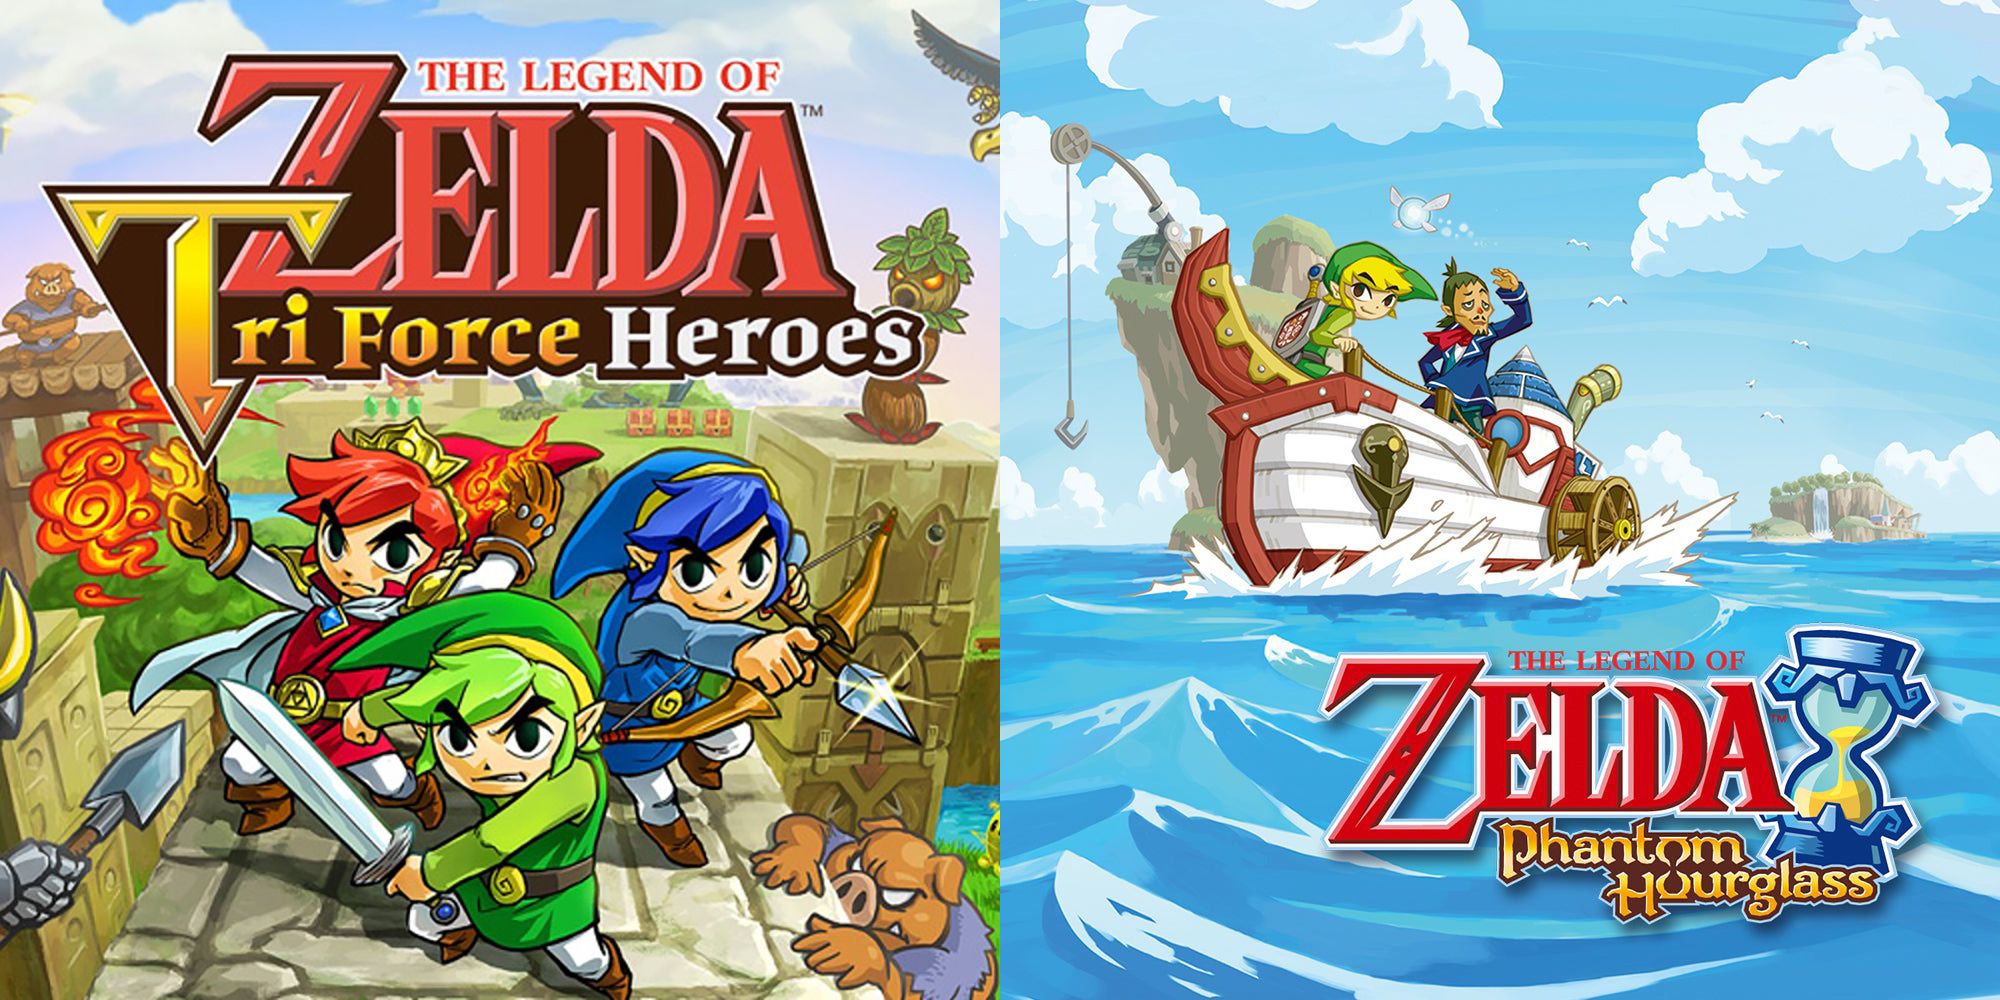 Legend of Zelda Multiplayer Games